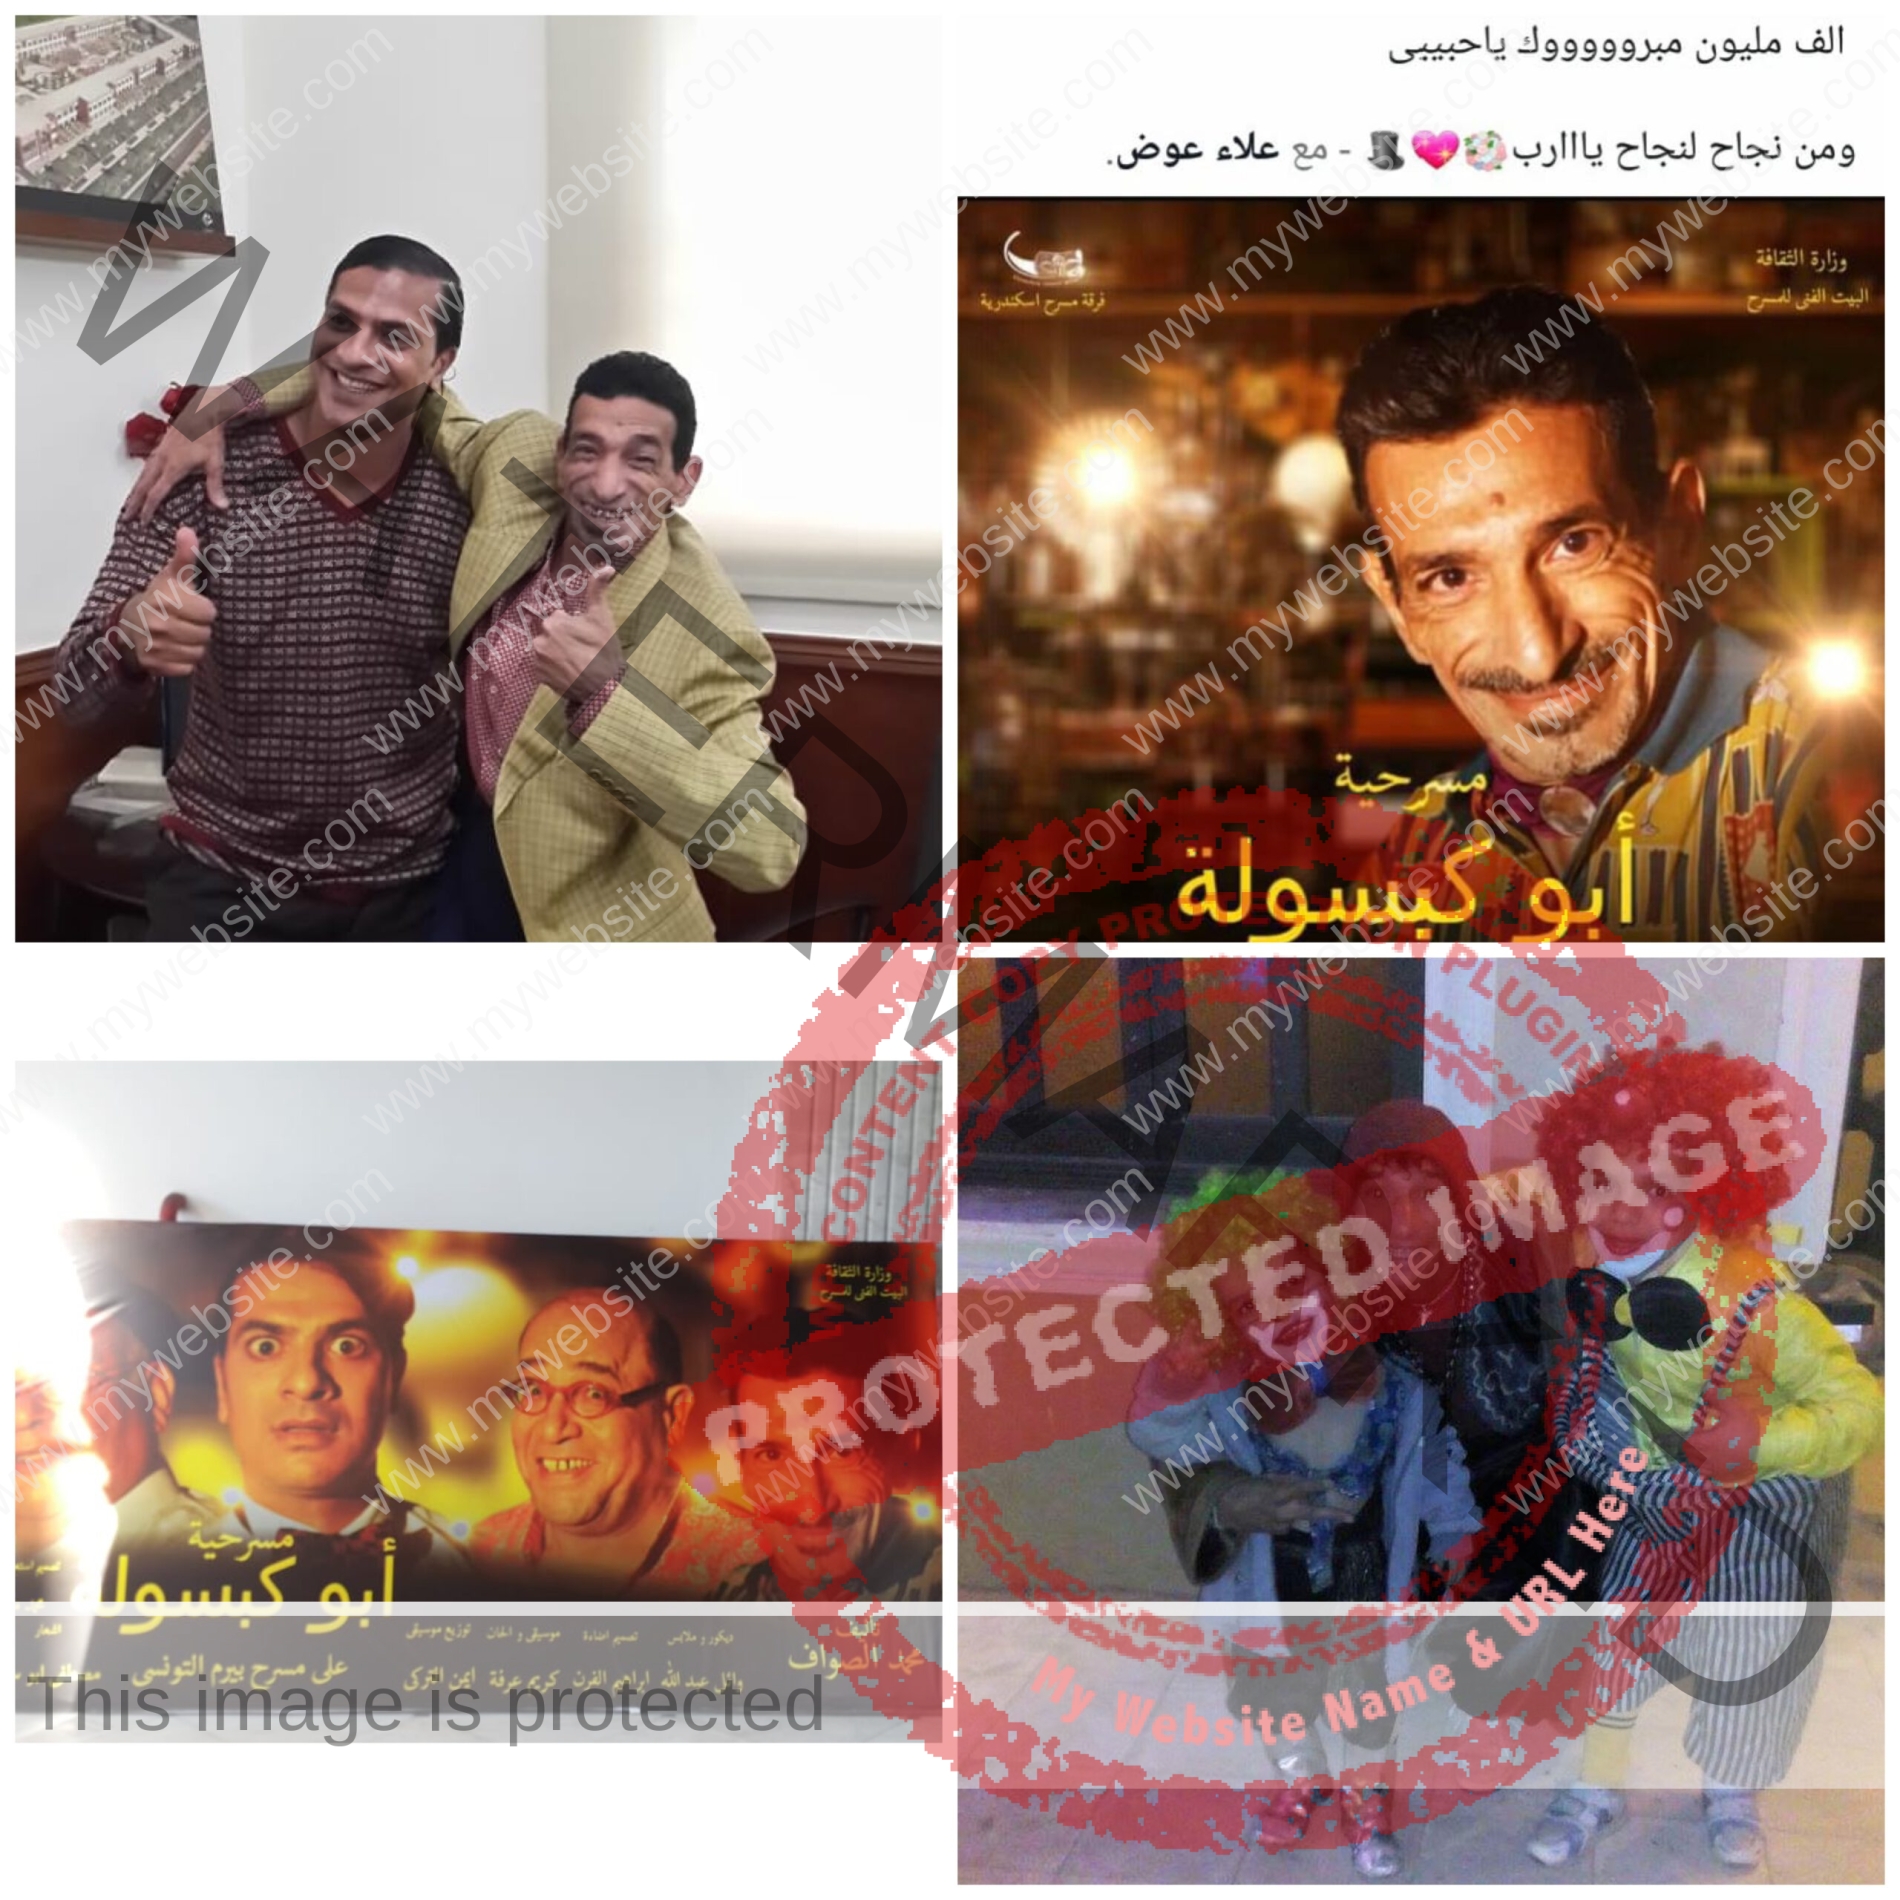 الفنان علاء عوض ملك الكوميديا وحوار خاص مع عالم النجوم